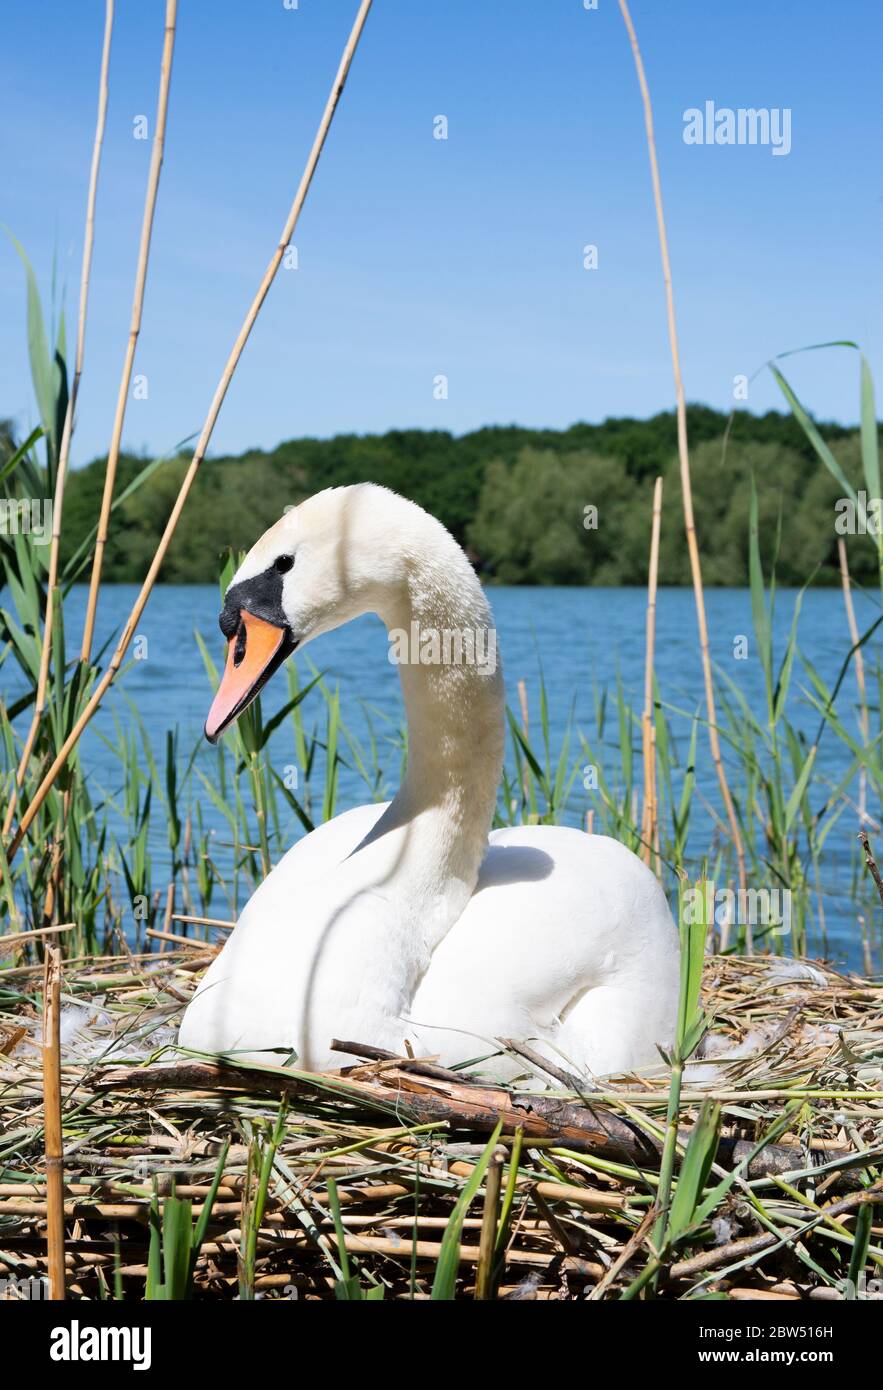 Femelle Mute Swan, Cygnus olor, incubant sept œufs sur nid, Brant Reservoir, également connu sous le nom de Welsh Harp Reservoir, Londres, Royaume-Uni Banque D'Images